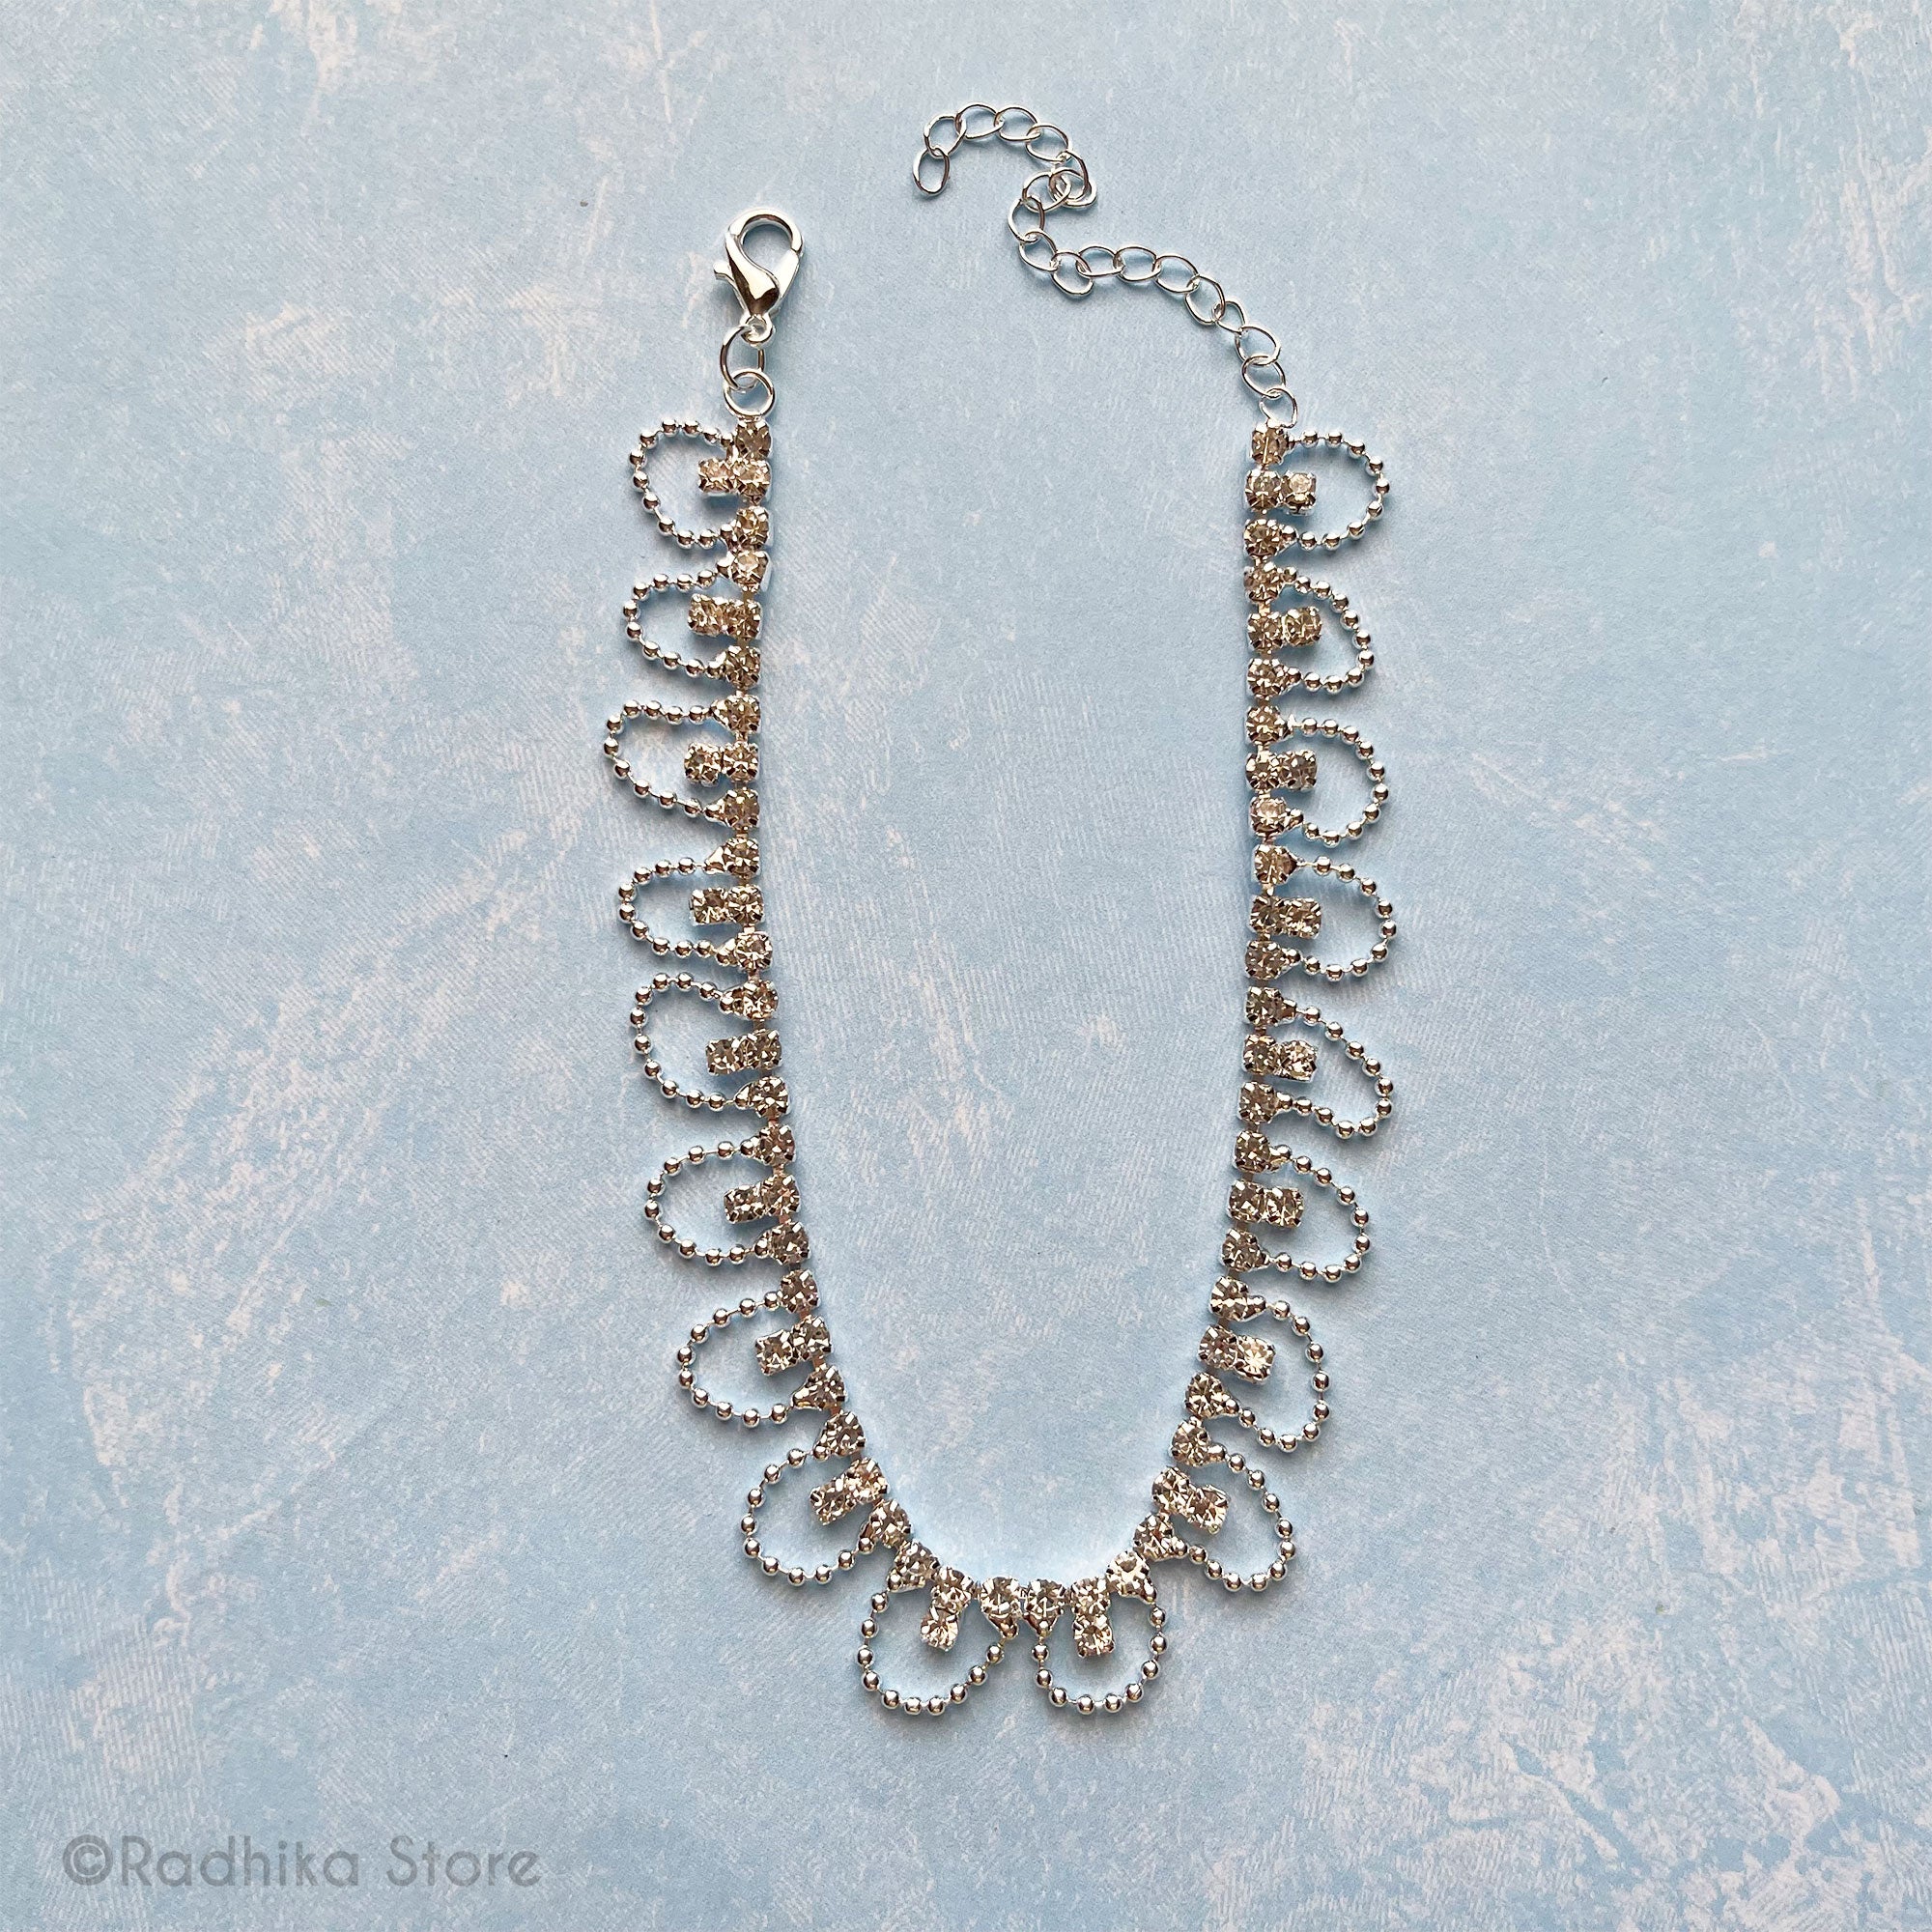 Scalloped Rhinestone - Deity Necklace - Size 8 Inch Large